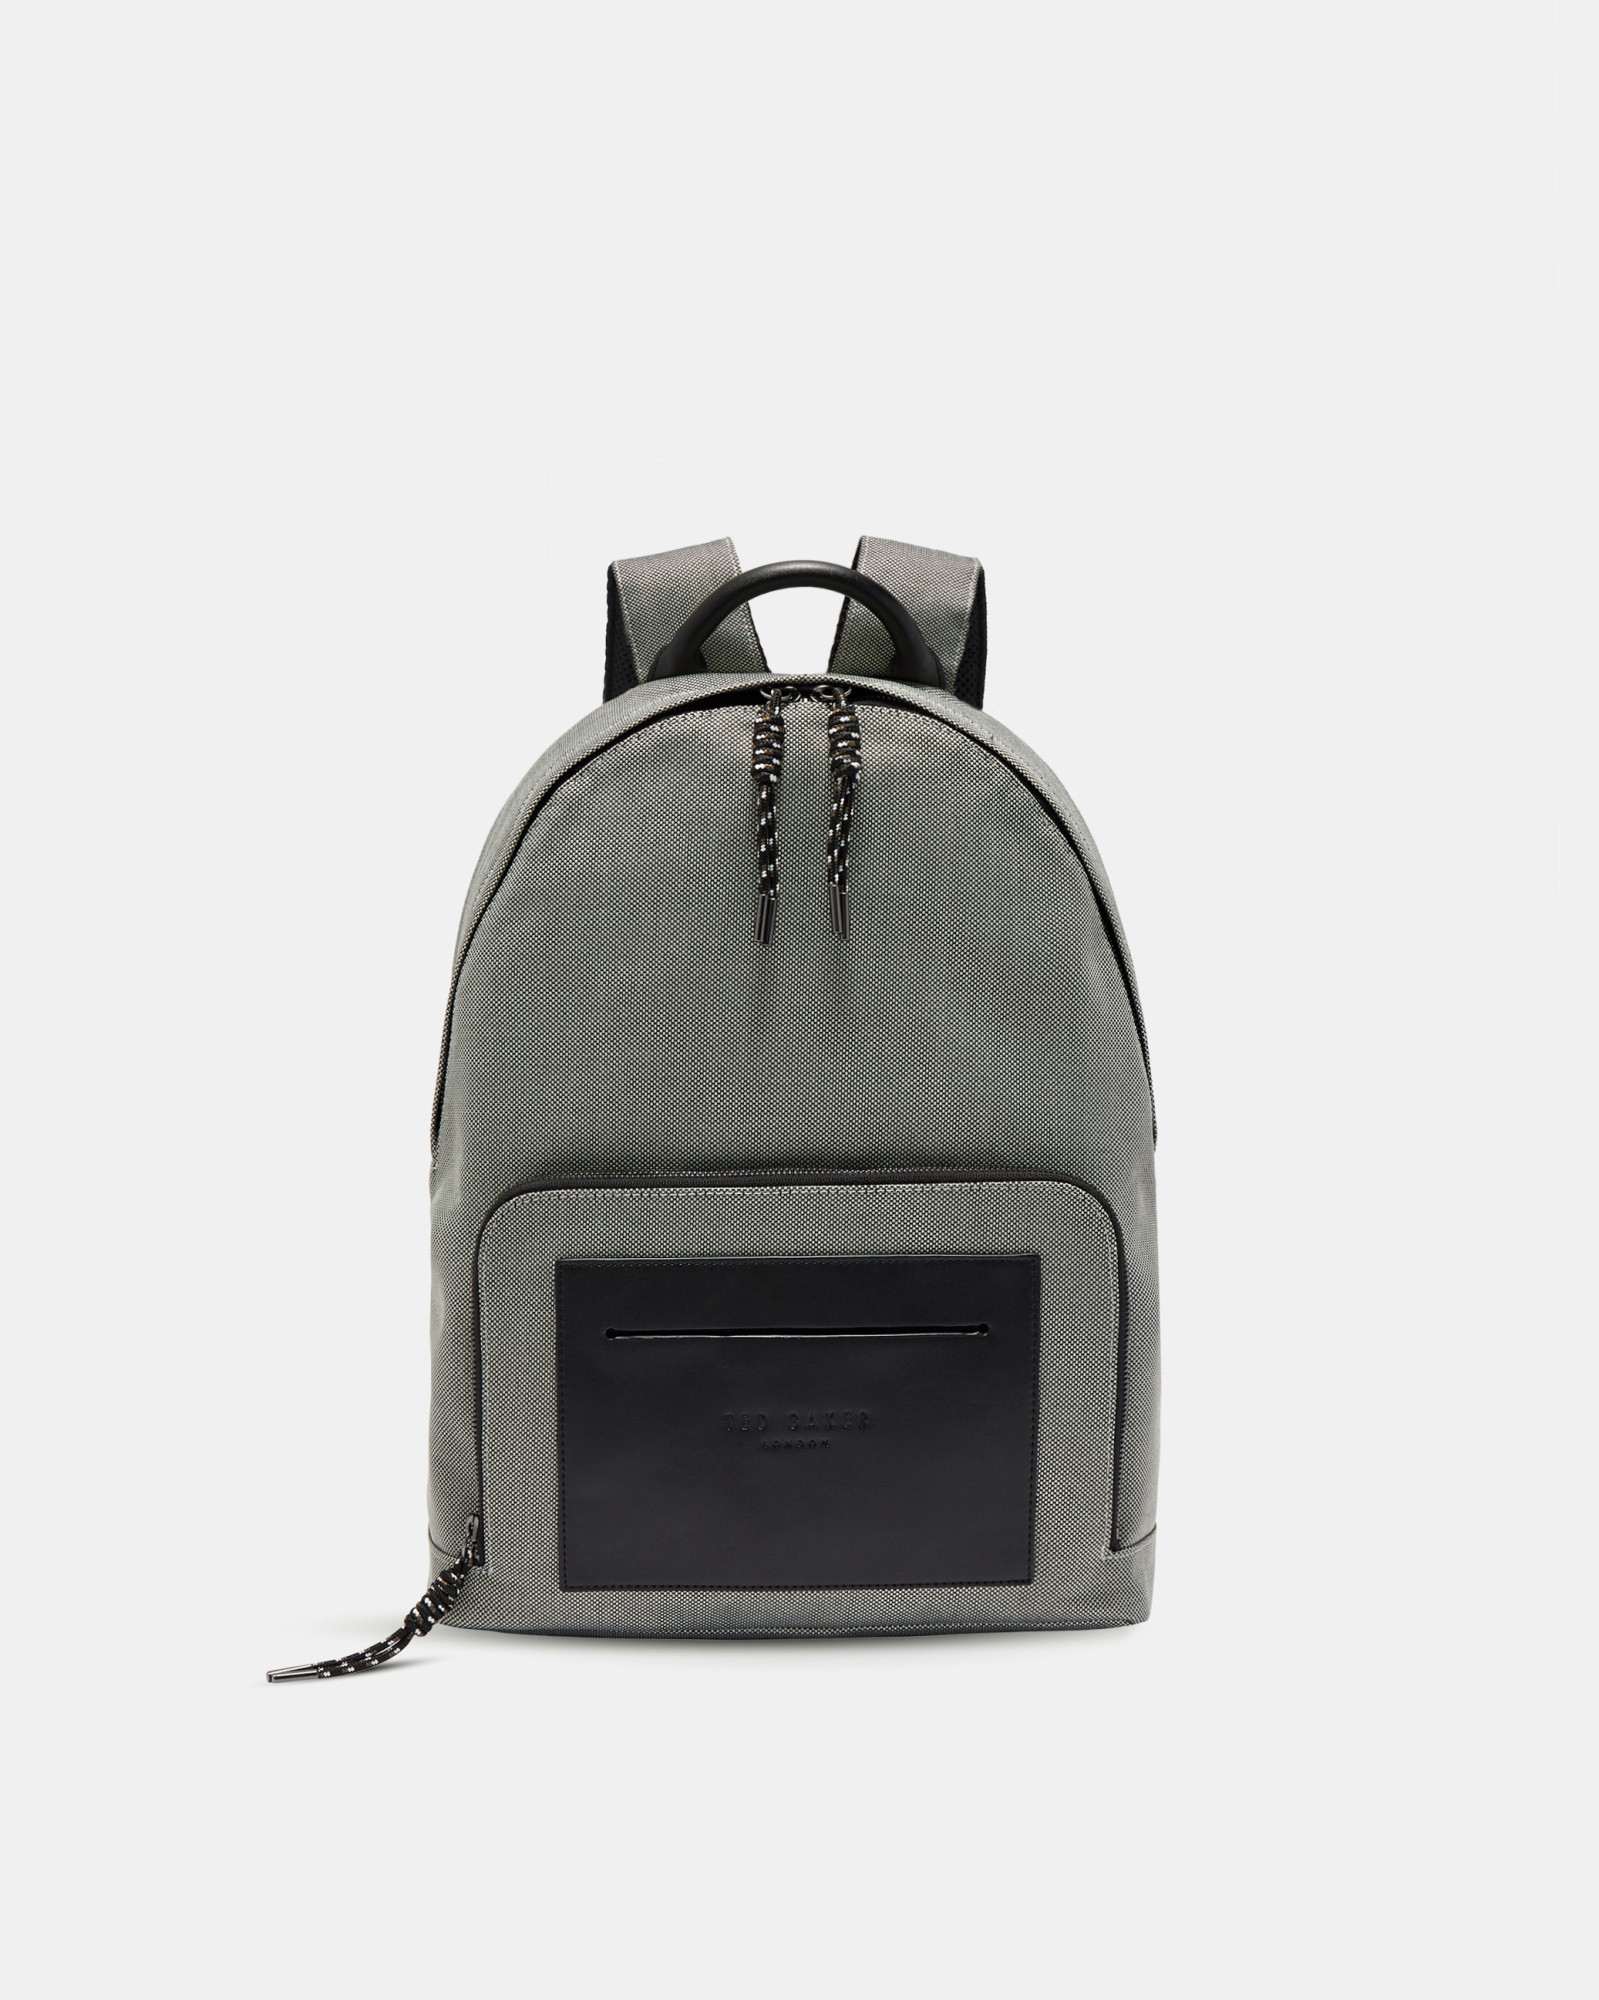 FILER Smart nylon backpack